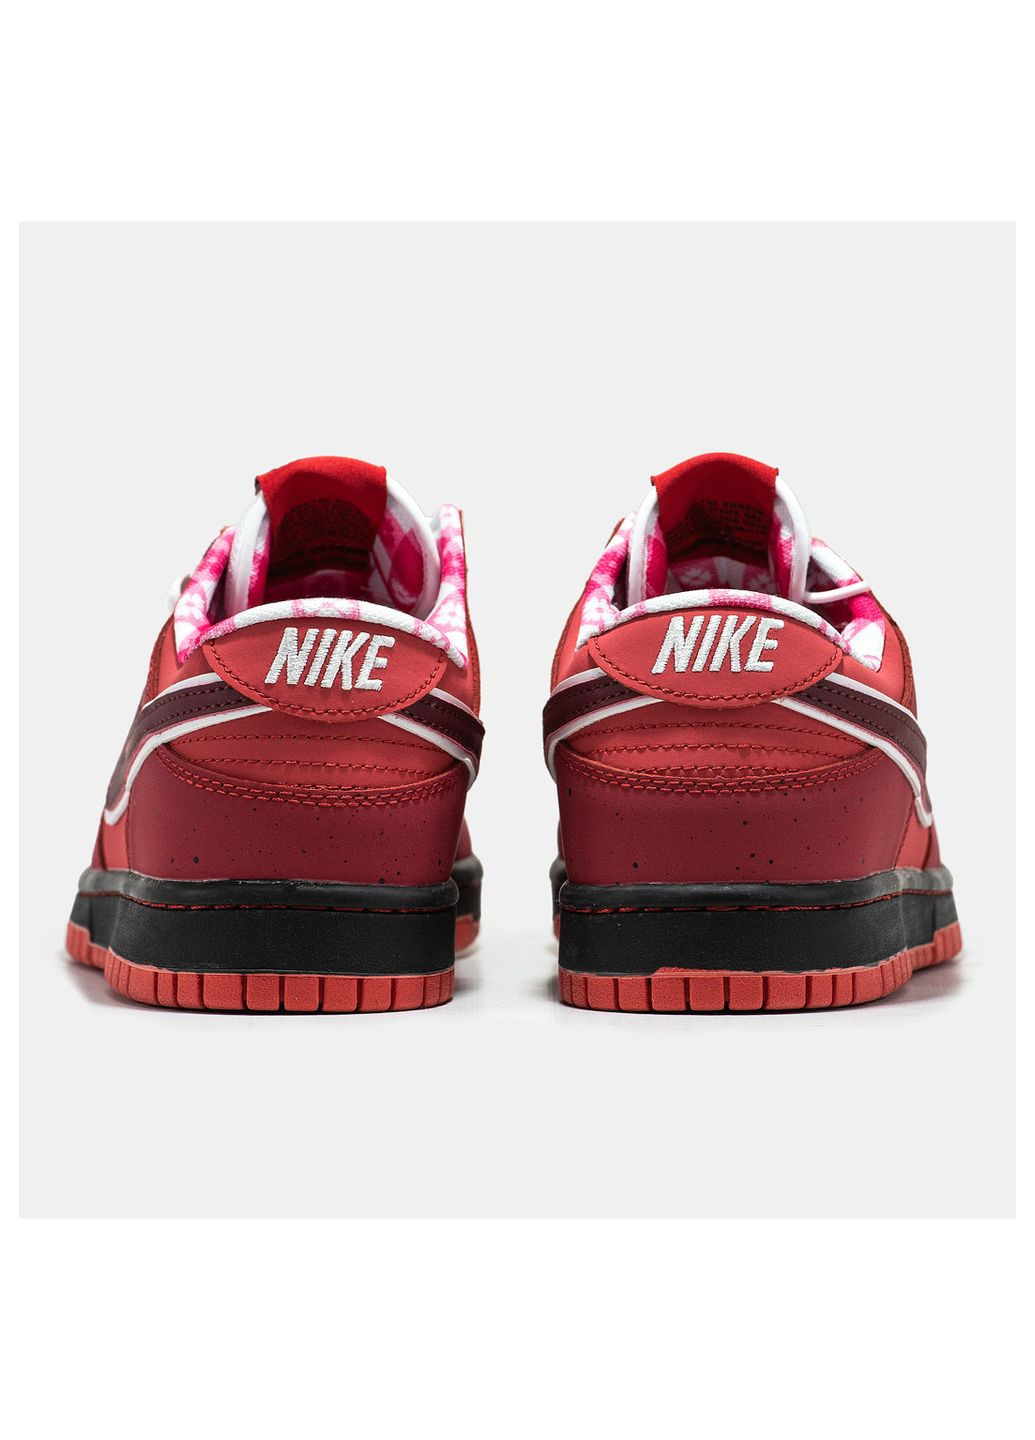 Красные демисезонные кроссовки мужские Nike SB Dunk Low Red Lobster